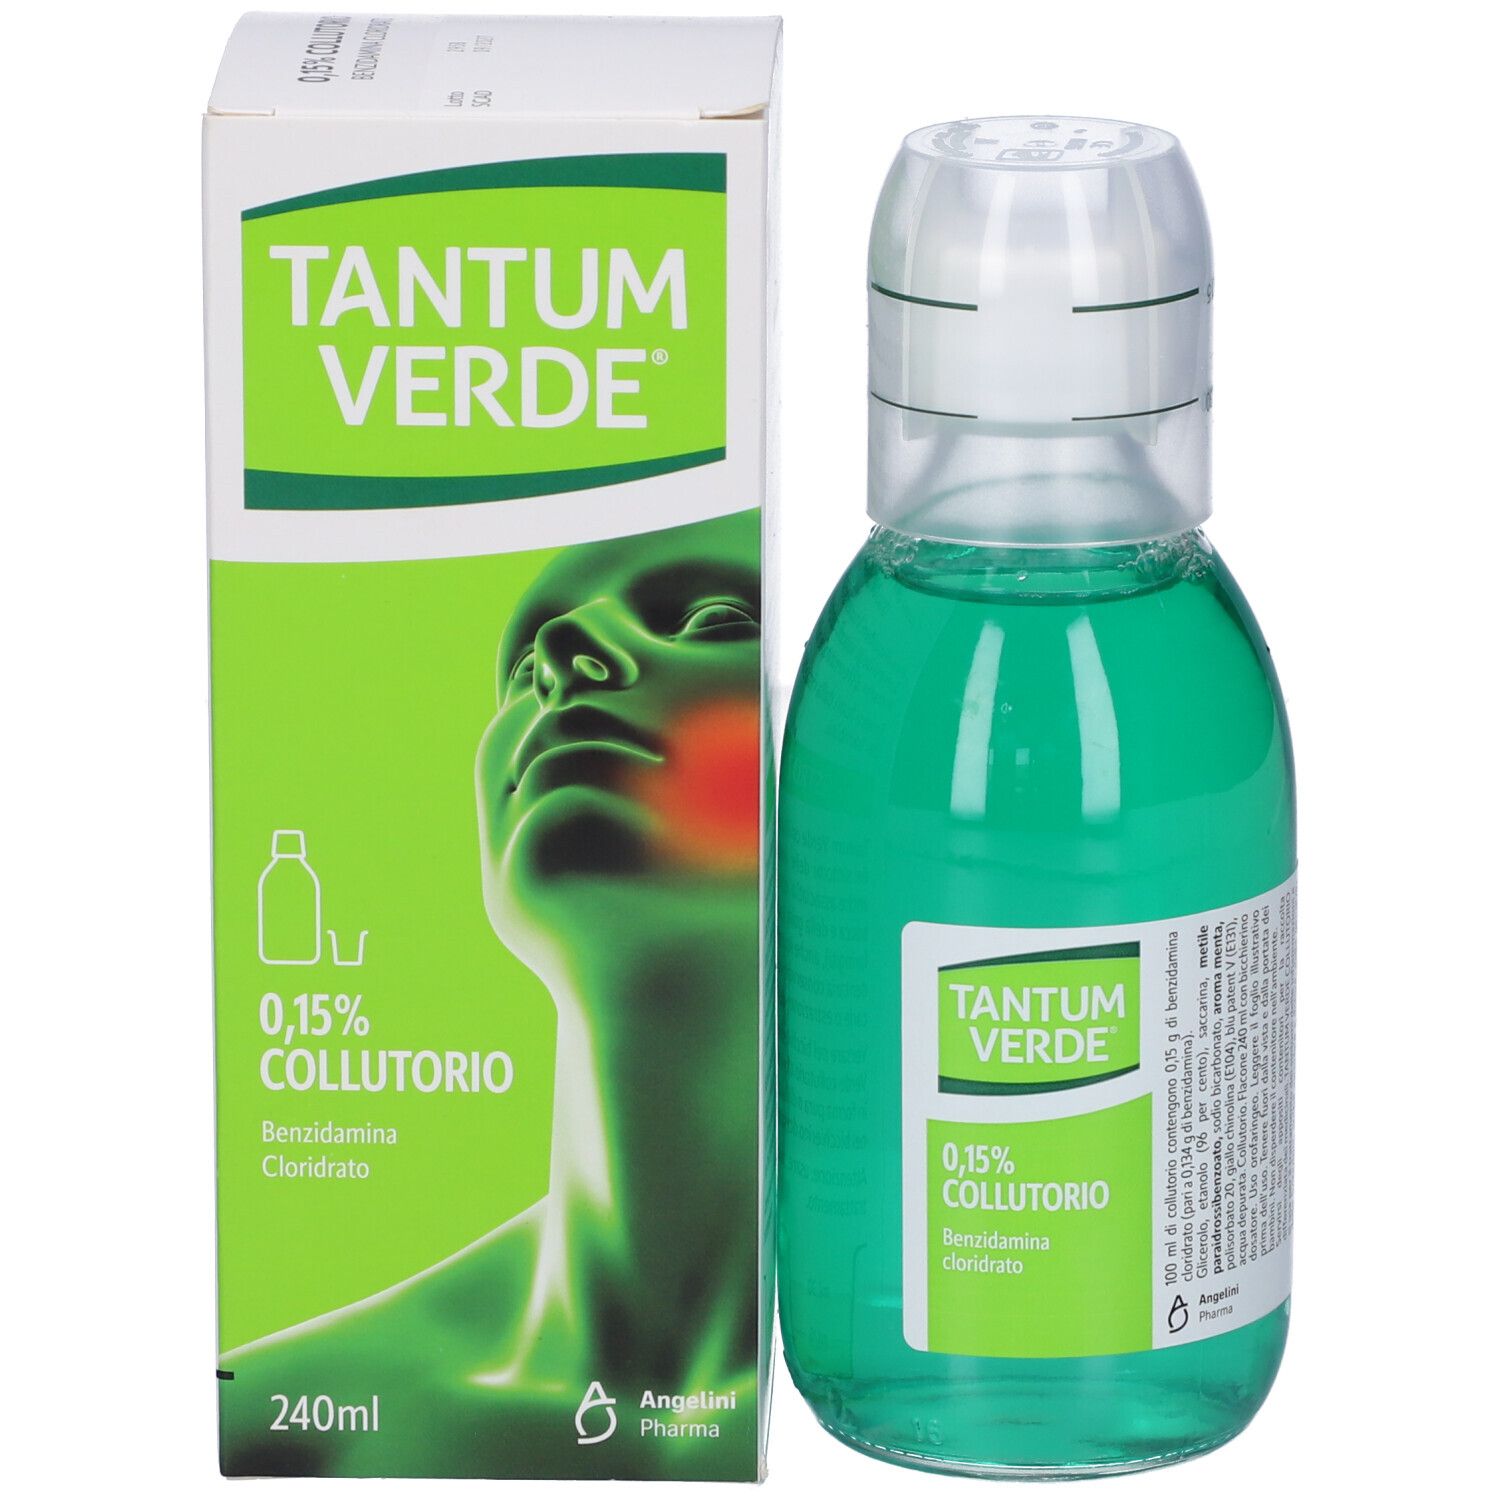 TANTUM VERDE® 0,15% Collutorio 240 ml